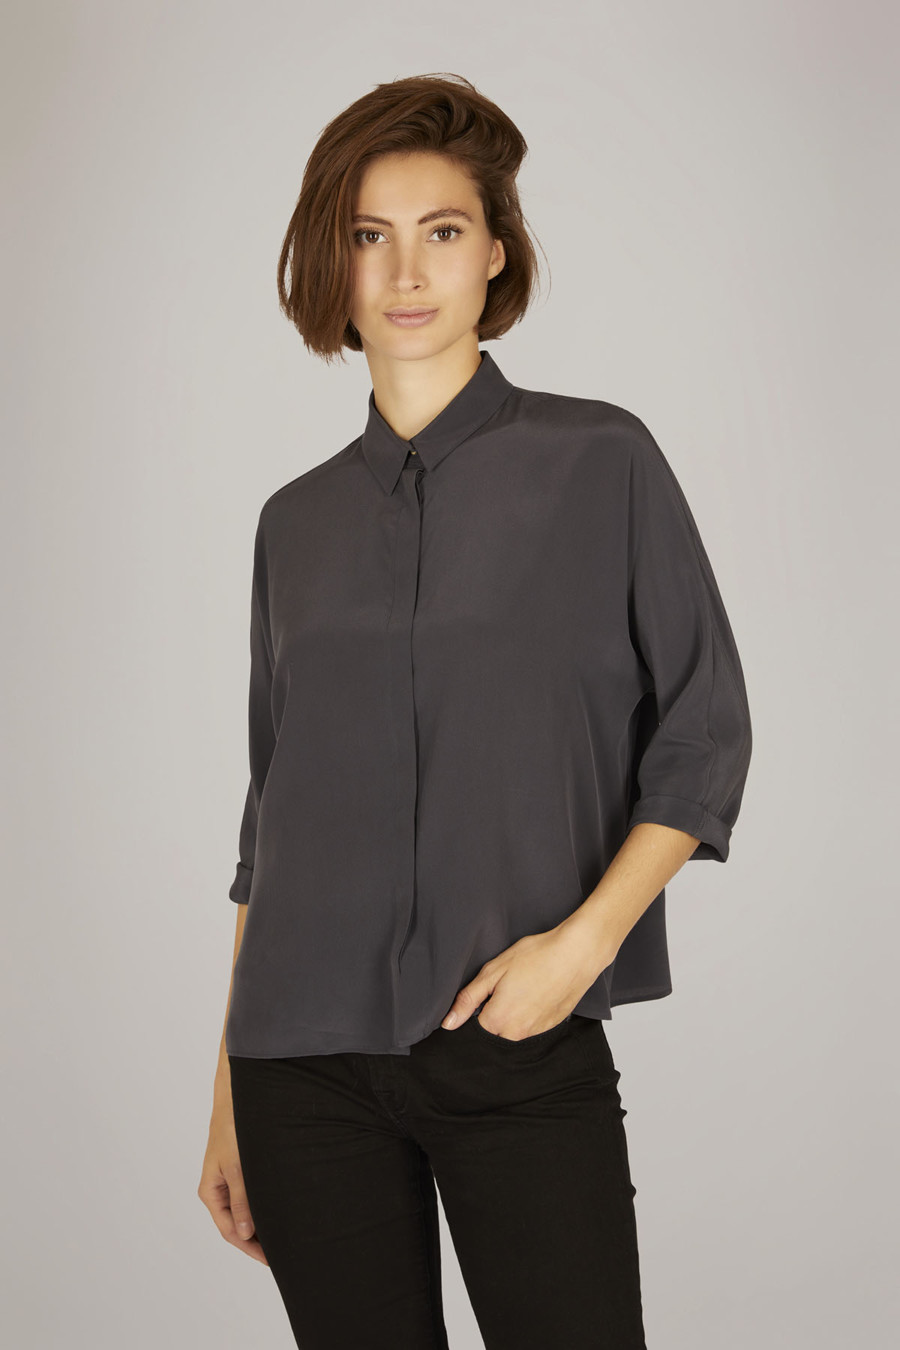 EMMA – Bluse mit schmalem Kragen – Farbe: Schiefer